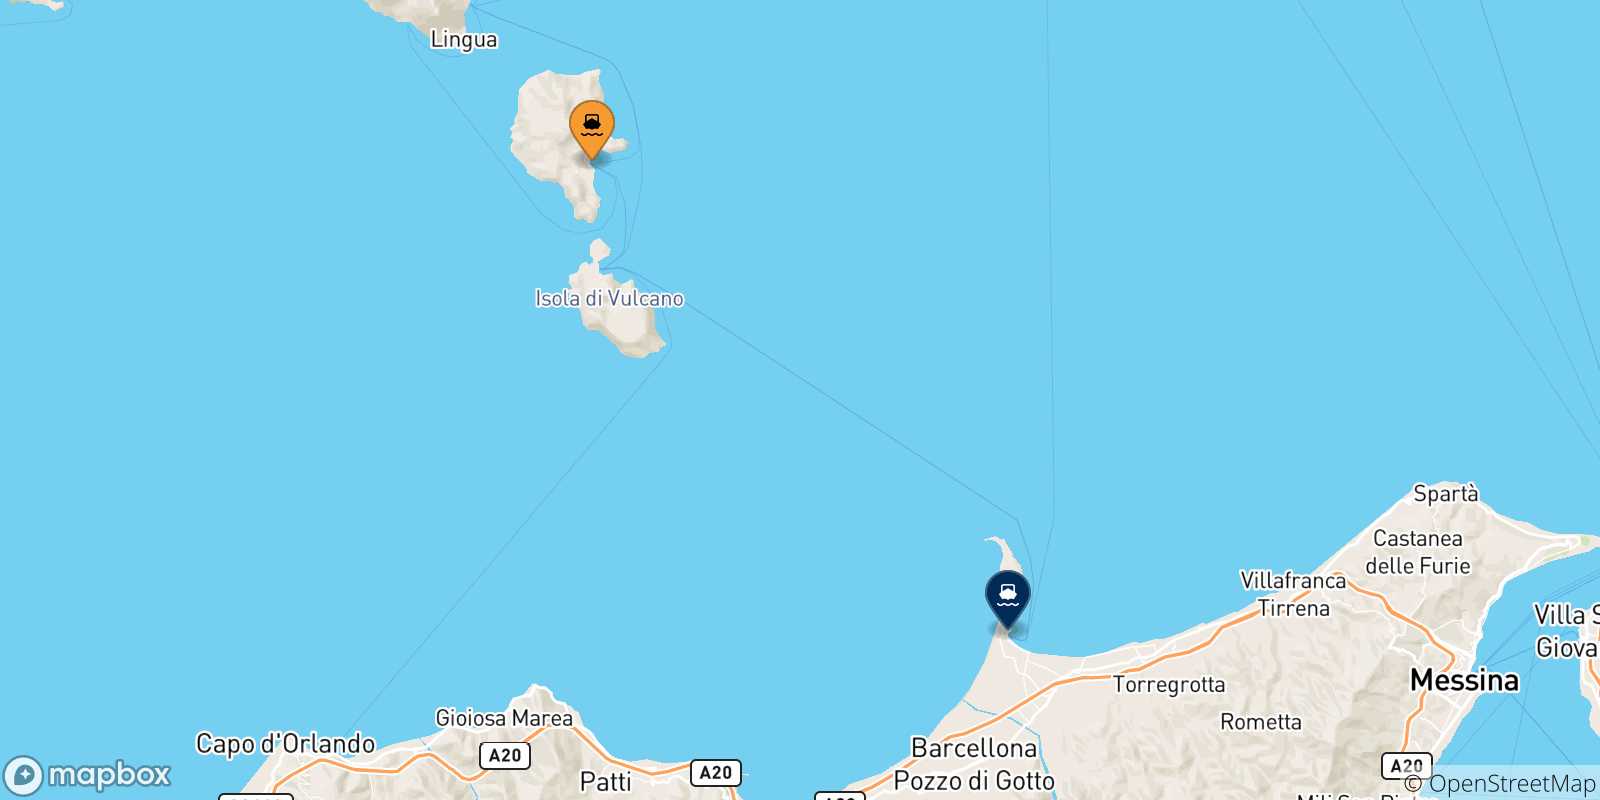 Mapa de las posibles rutas entre Lipari y  Sicilia